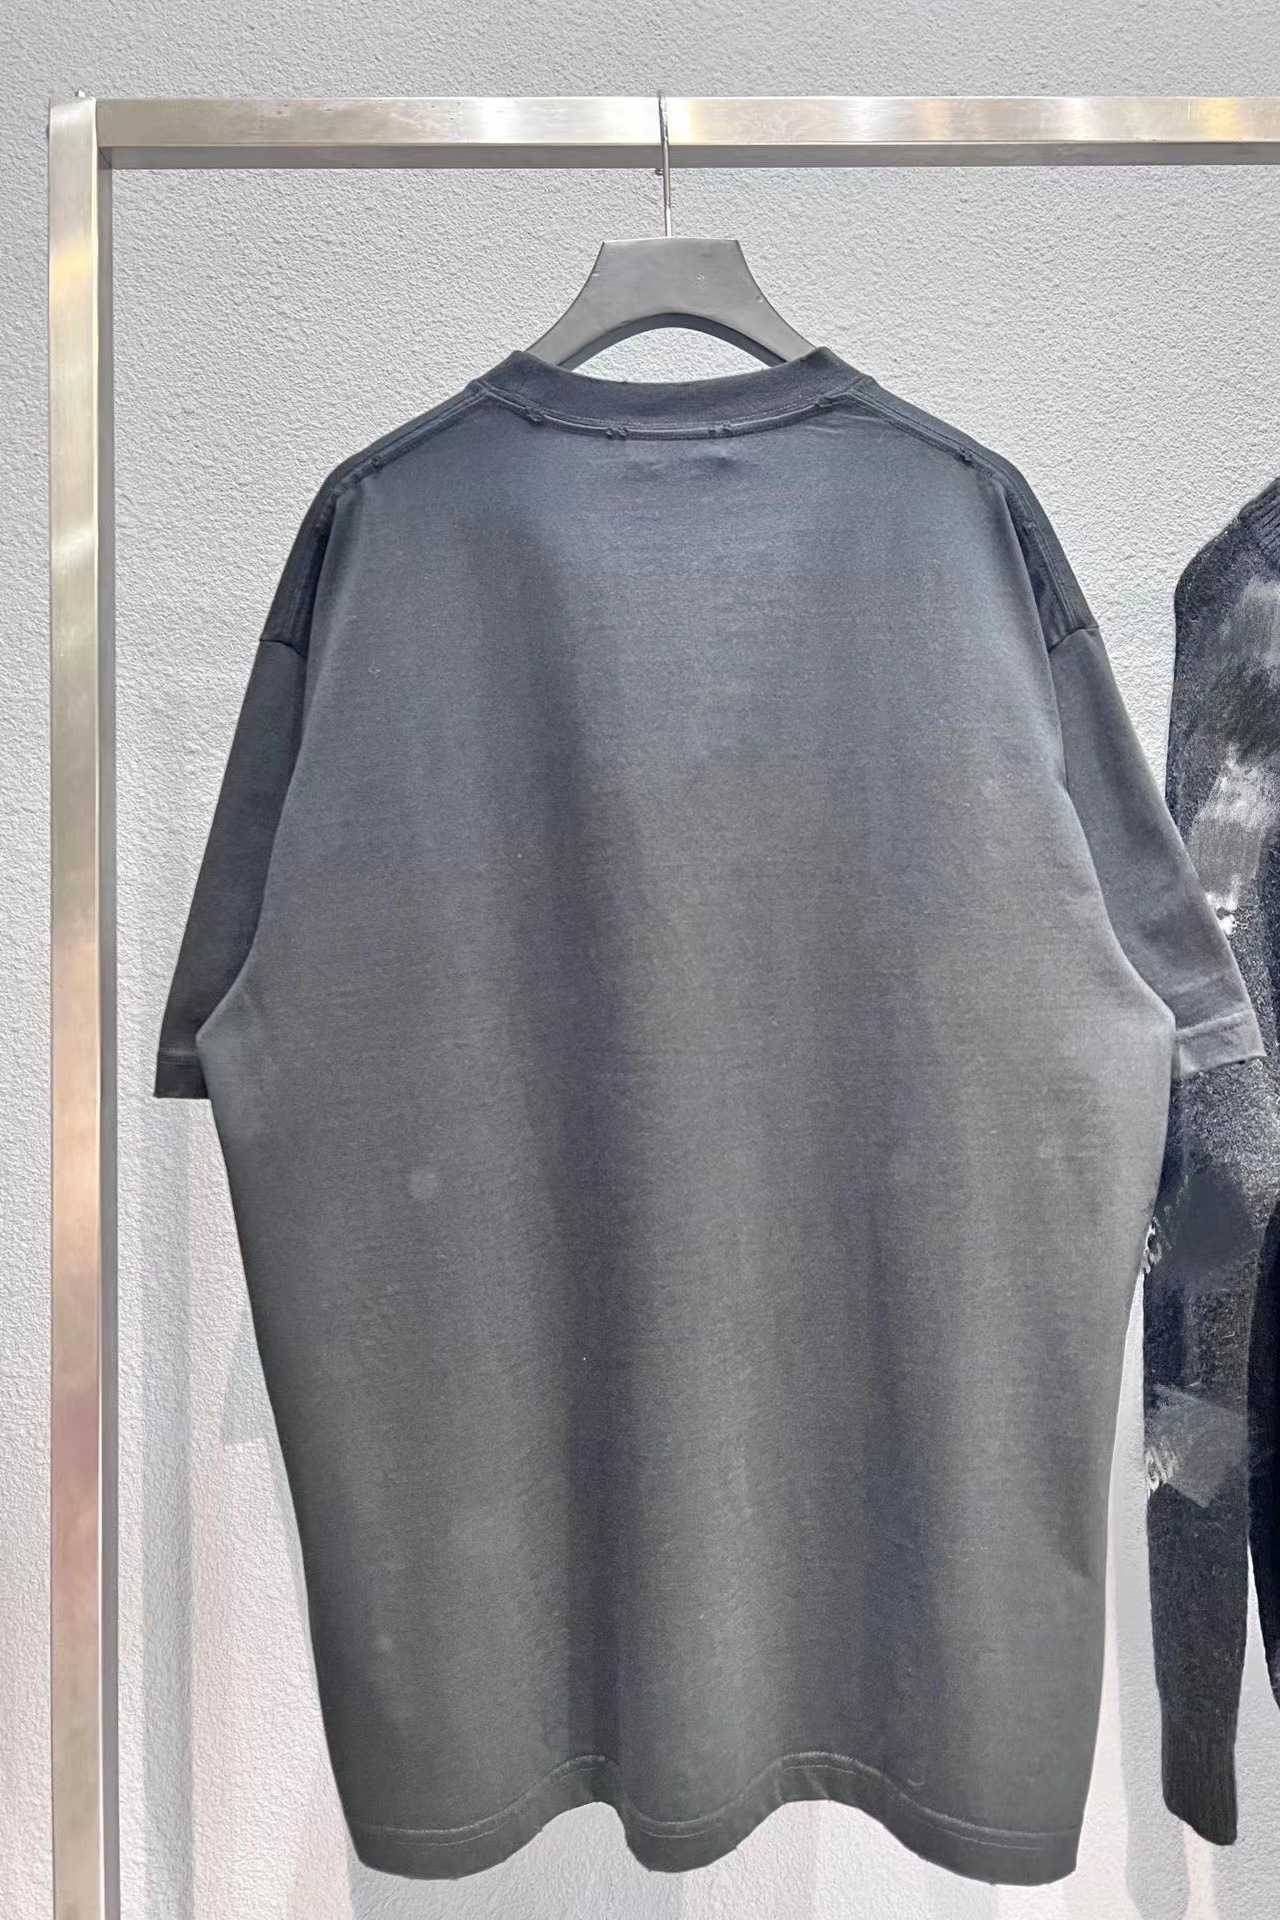 Tasarımcı Yaz Kadın Tişört Doğru Versiyonu Market Summer Sleeve T-Shirt Küçük Nakış Rahat Günlük Çözüm Tee